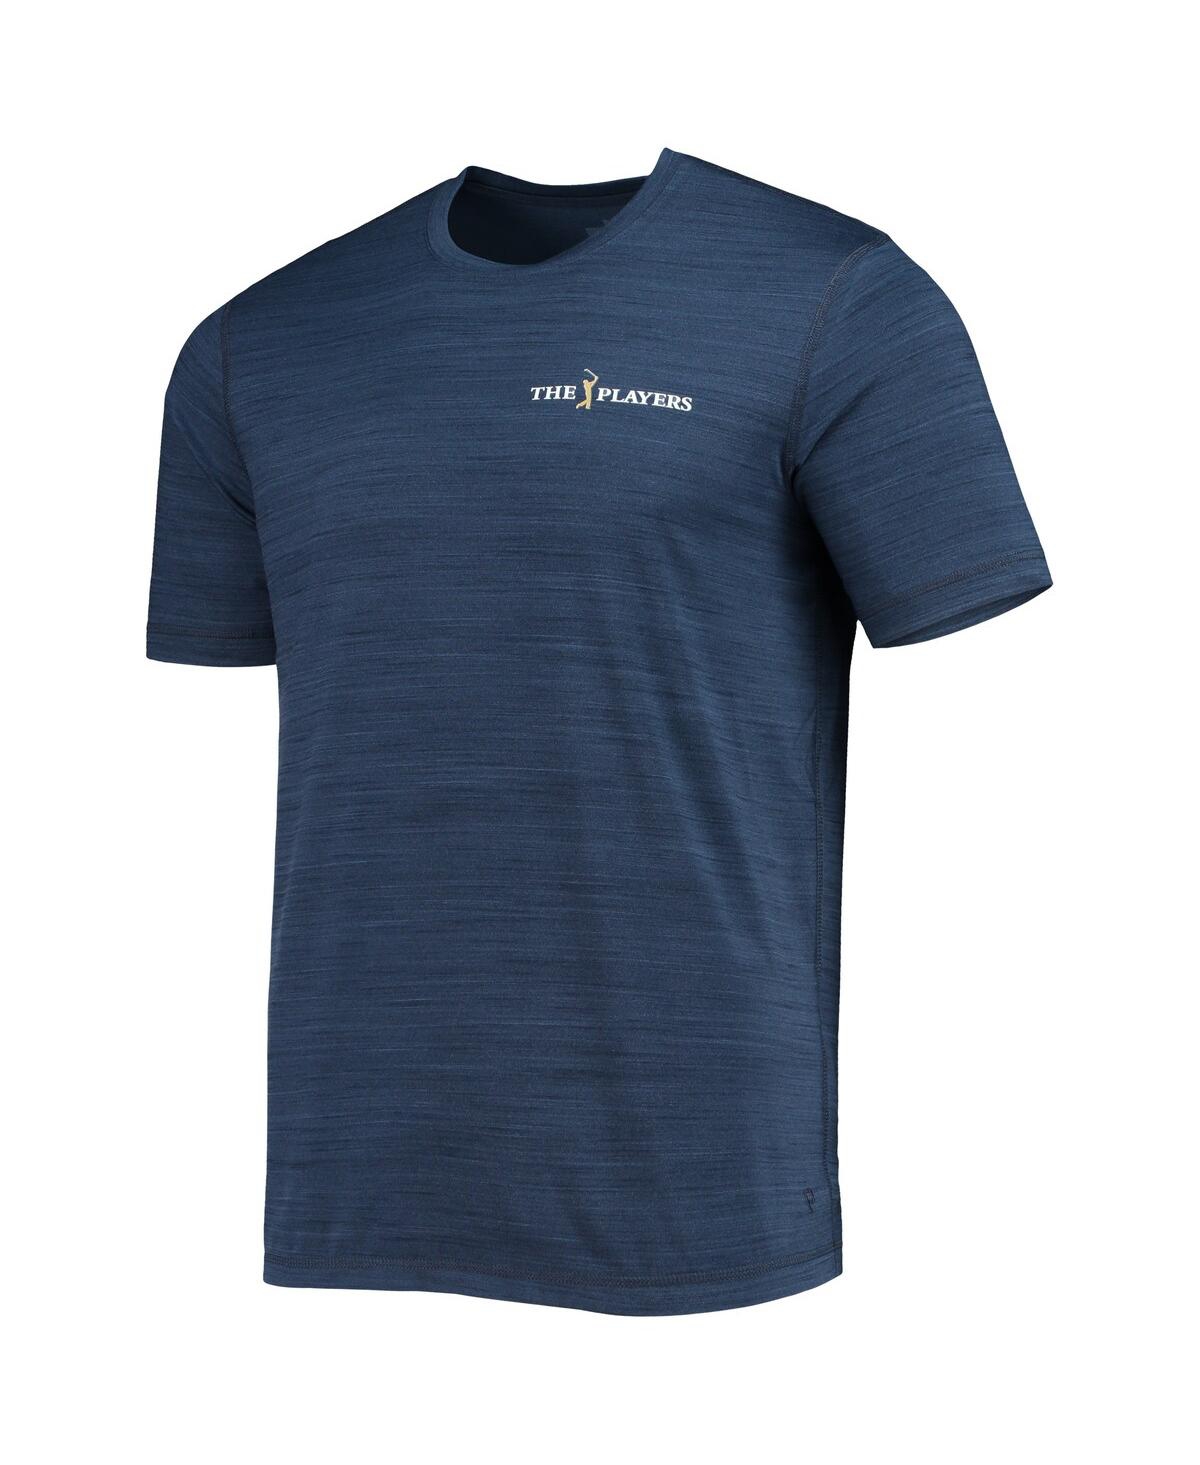 Shop Puma Men's  Navy The Players Cloudspun T-shirt